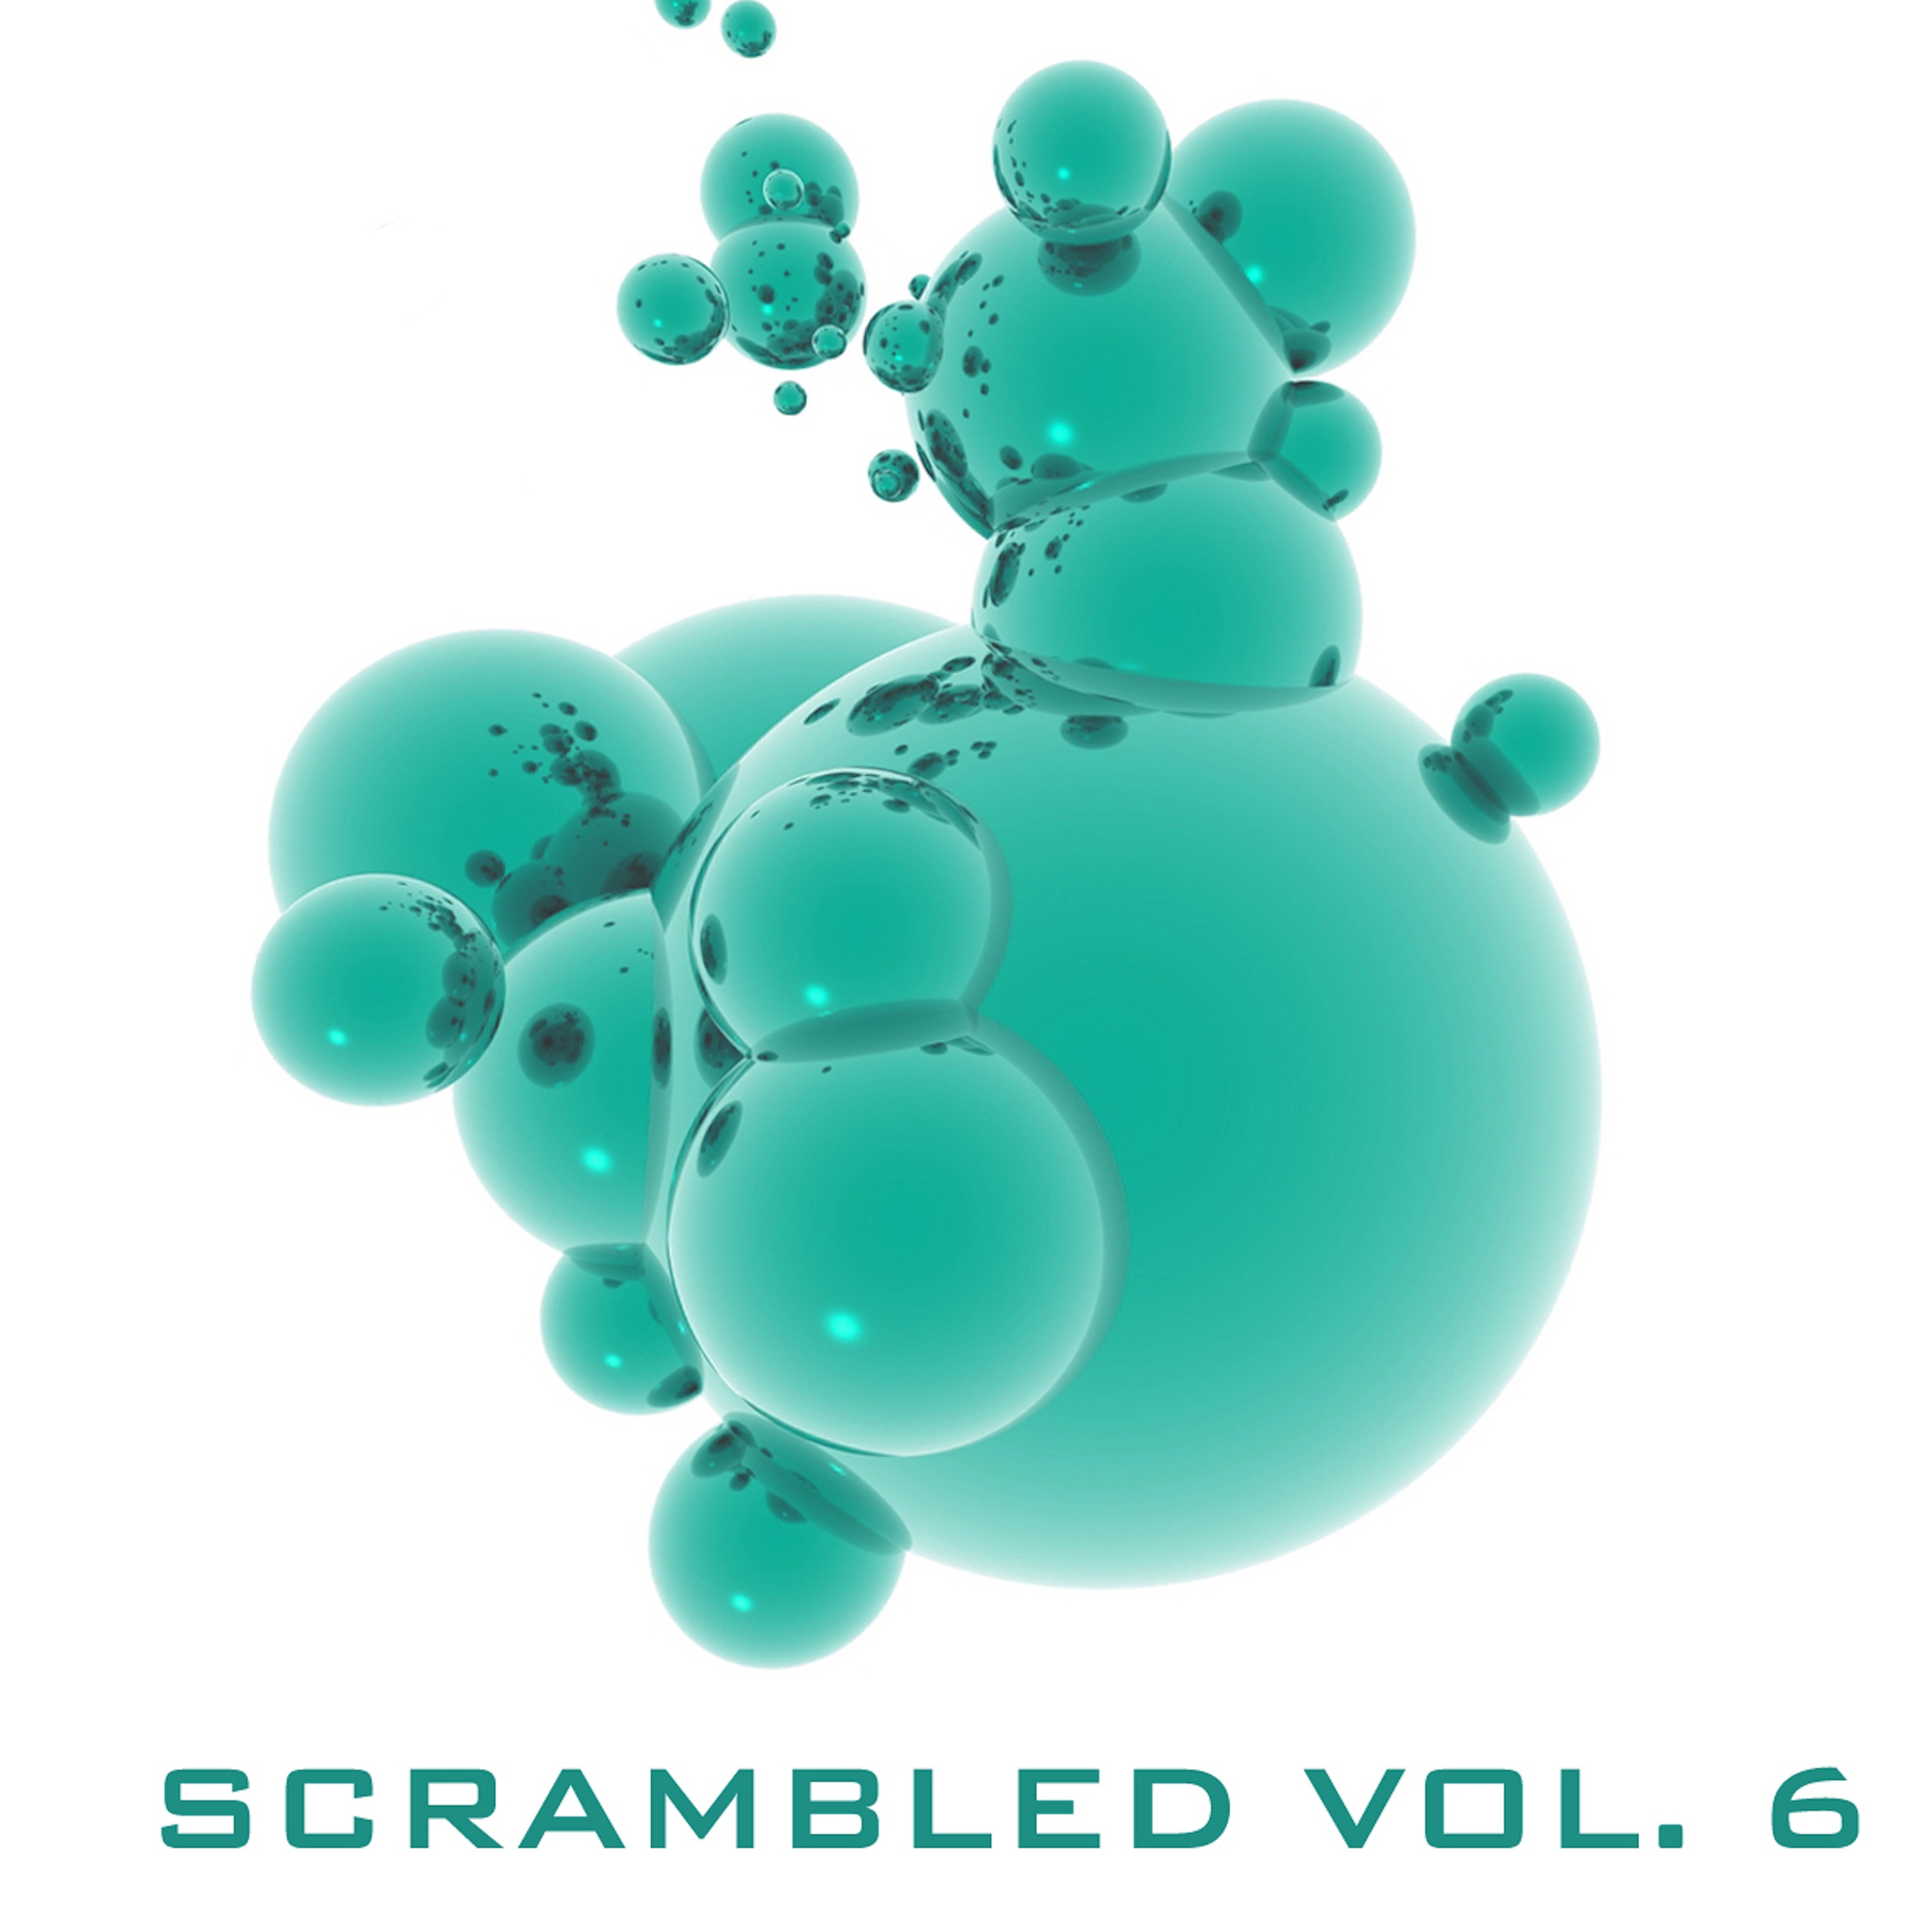 Scrambled, Vol. 6